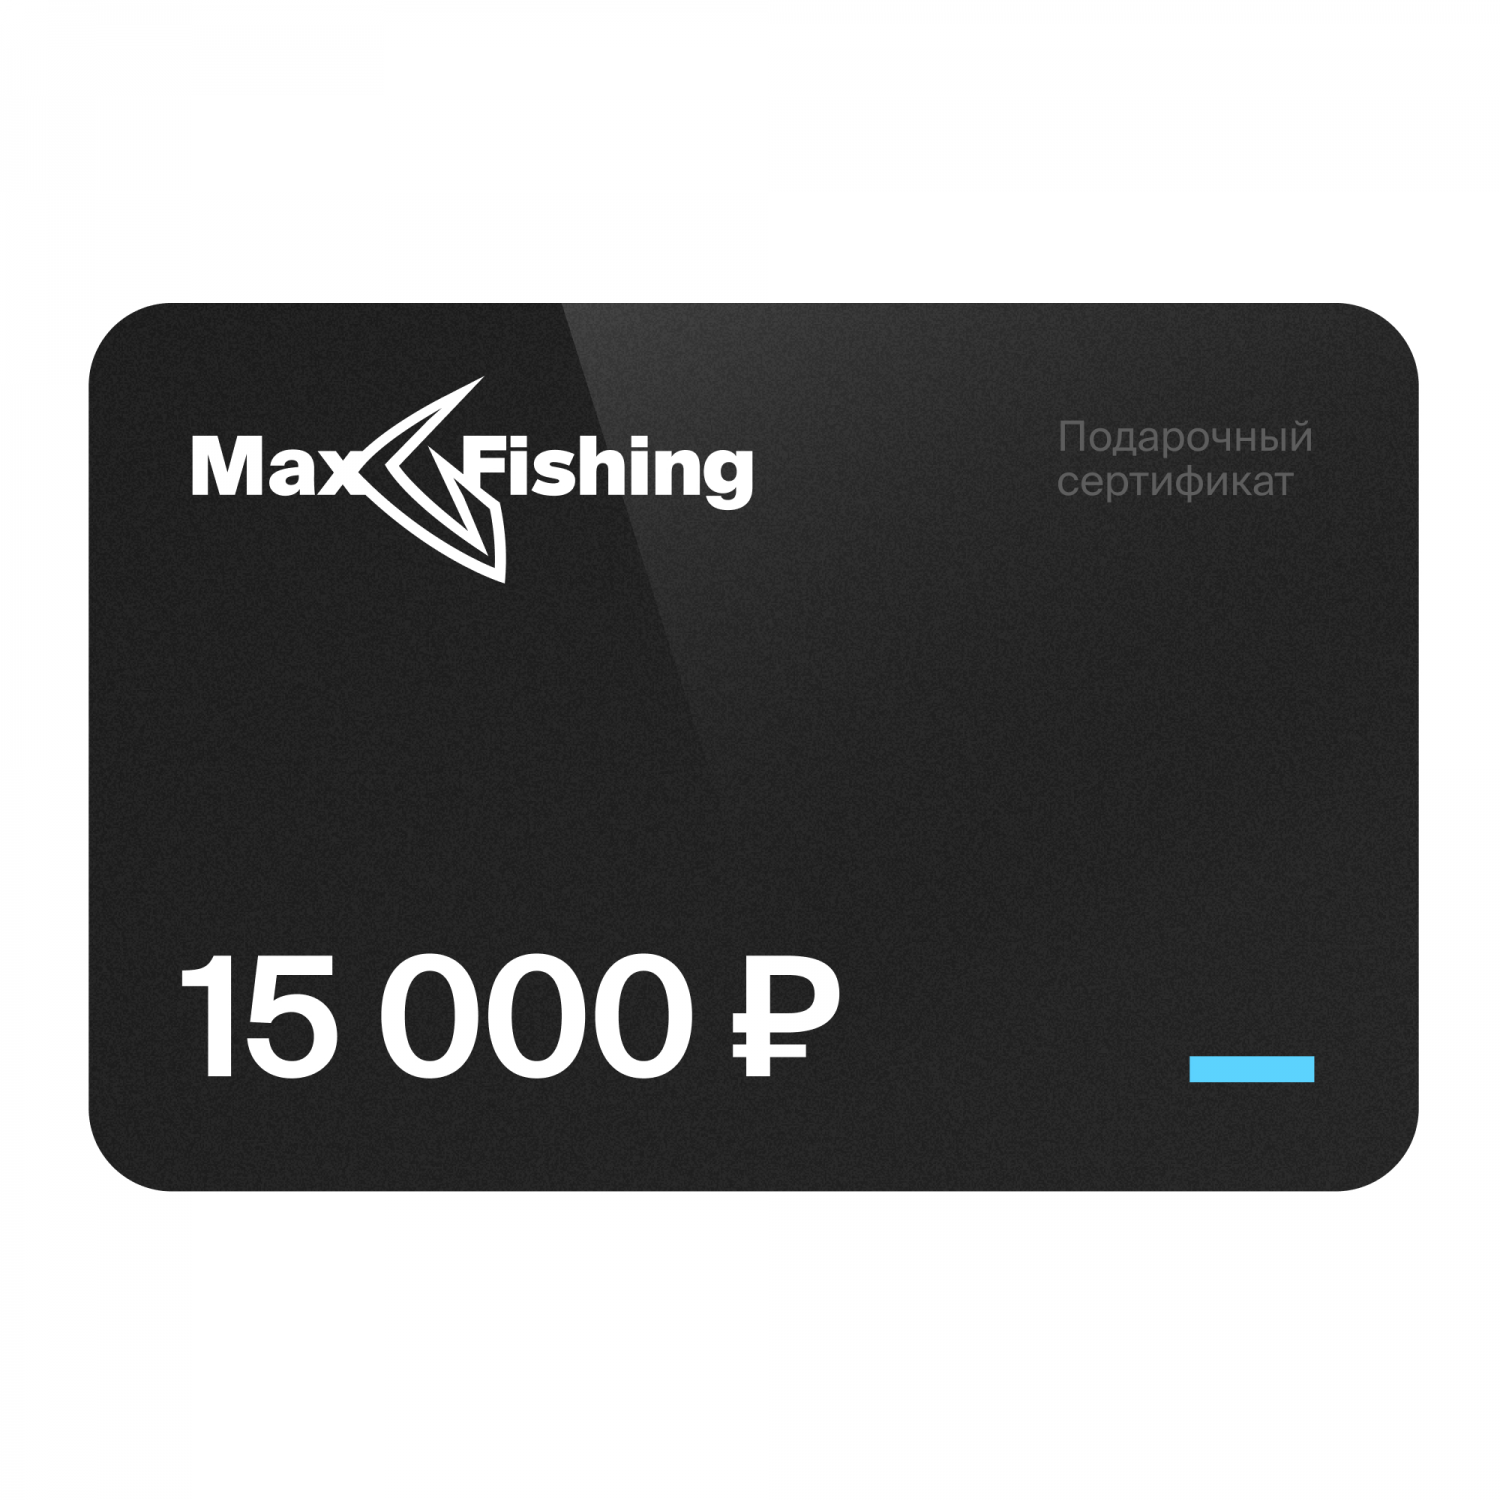 Подарочный сертификат MaxFishing 15 000 ₽ подарочный сертификат maxfishing 100